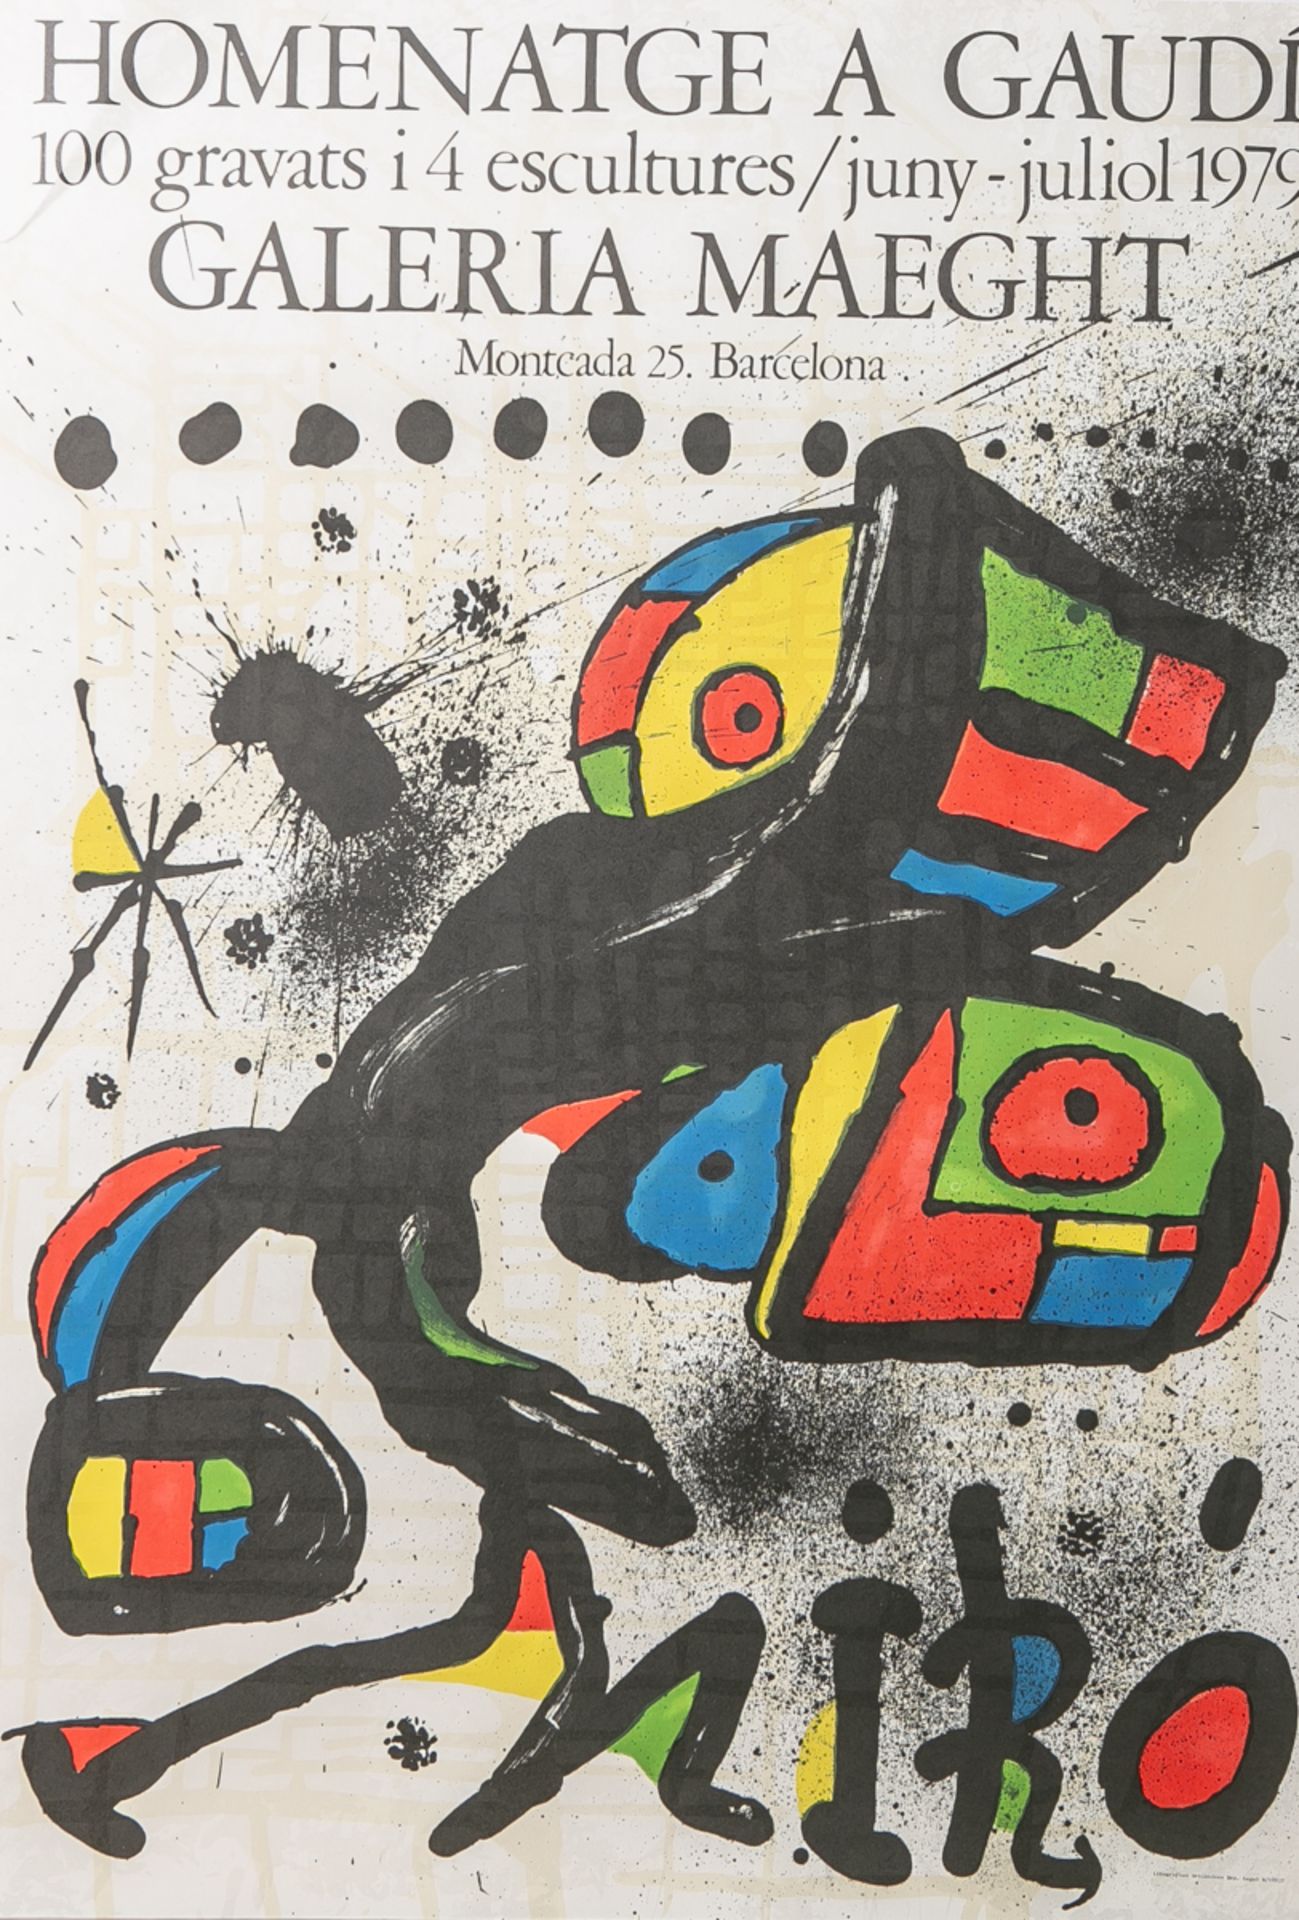 "Homenatge a Gaudí: 100 gravats i 4 escultures/juny-juliol 1979" (Ausstellungsplakat),Lithographie